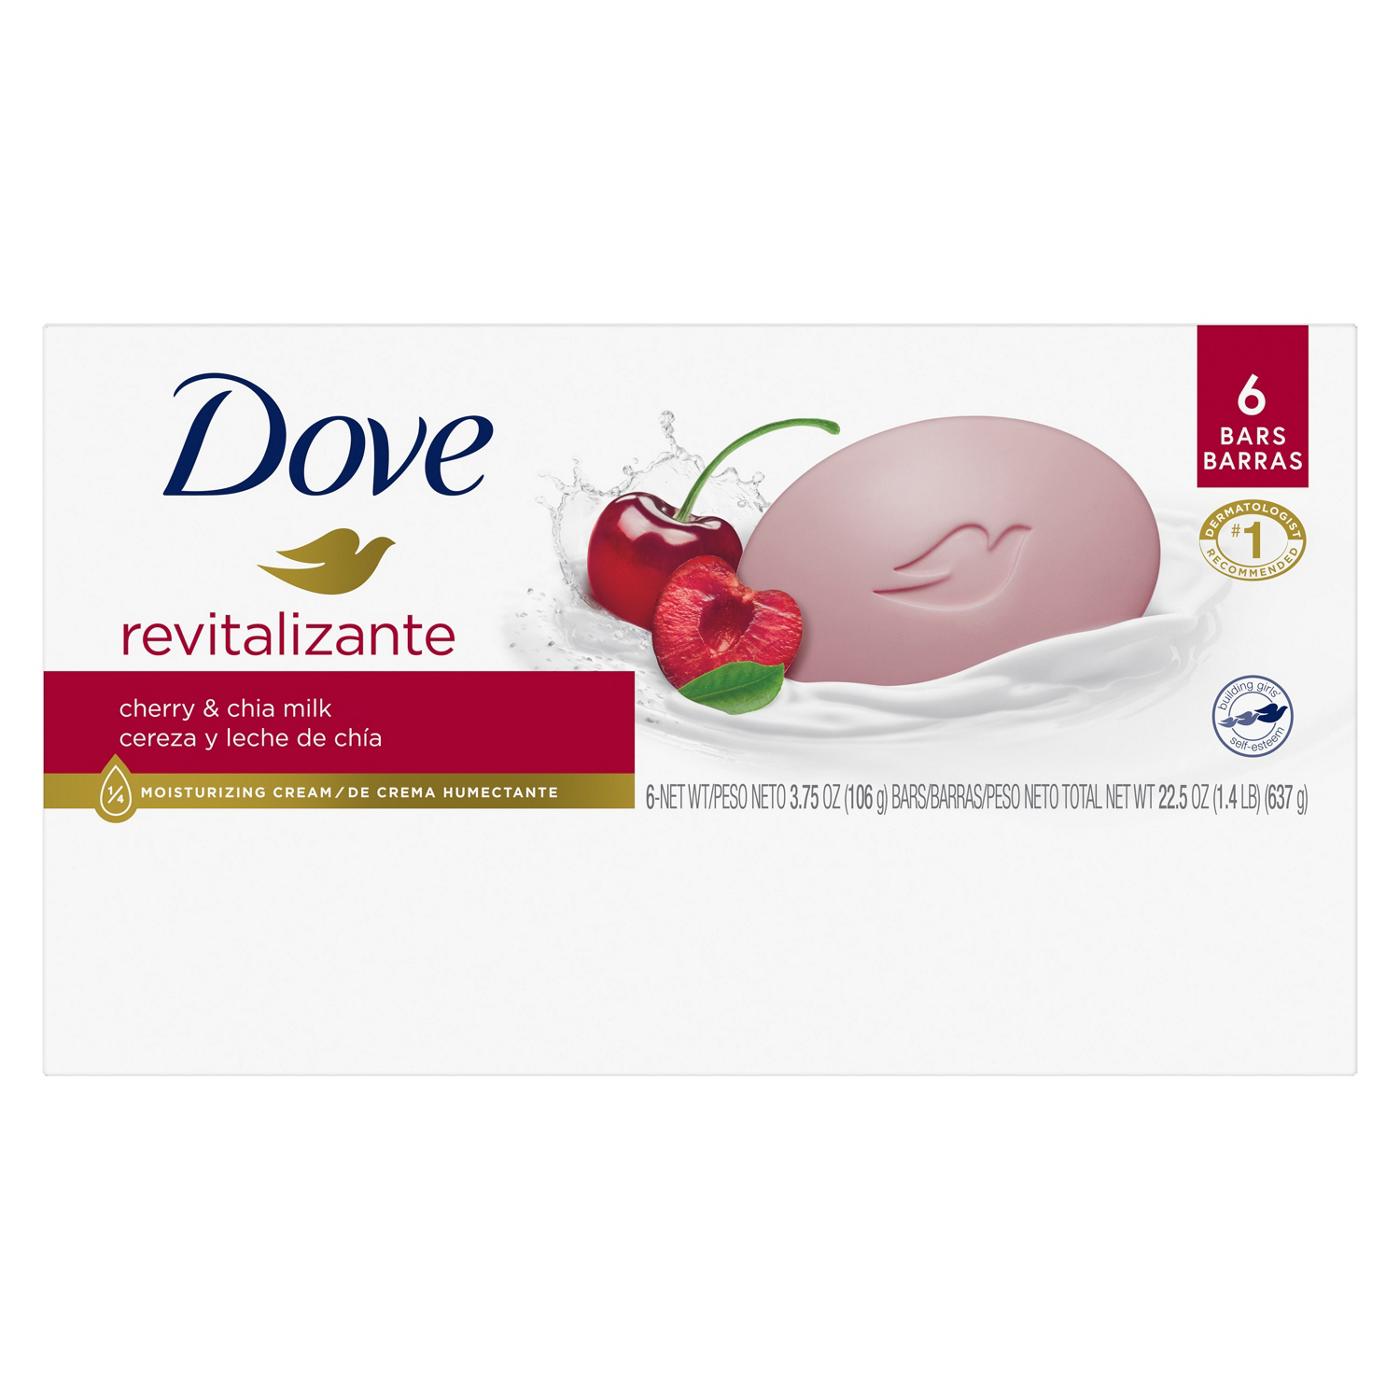 Dove Revitalizante Bar Soap - Cherry & Chia Milk; image 2 of 8